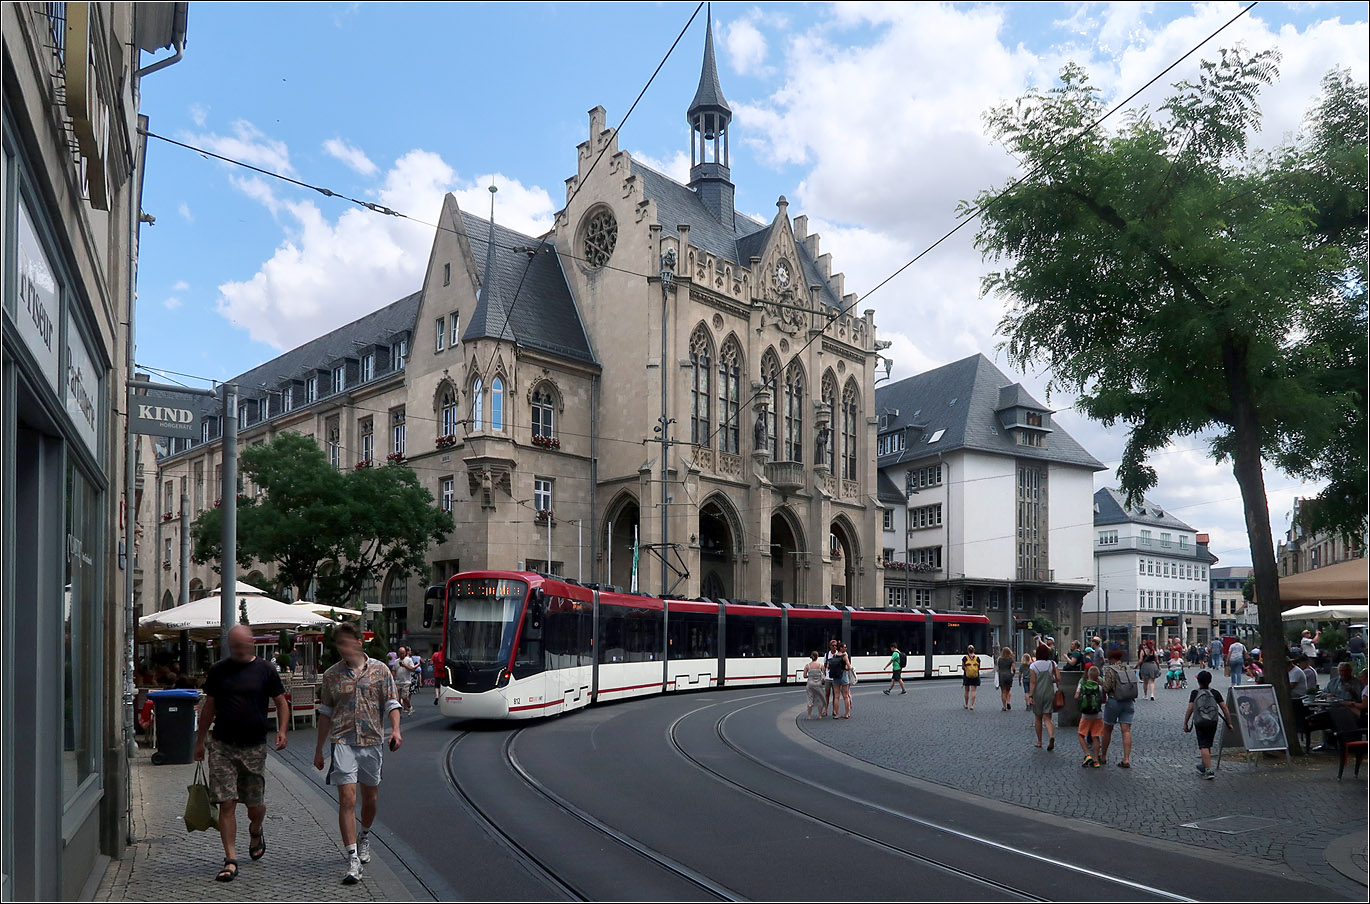 Am Erfurter Rathaus - 

Die 42 Meter langen siebenteiligen Tramlink-Bahnen von Stadler sind in Erfurt seit 2021 im Einsatz. Hier durchfährt Wagen 812 den Bogen auf dem Fischmarkt vor dem Erfurter Rathaus. Obwohl das Netz als 'Stadtbahn' bezeichnet wird, handelt es sich um eine klassische Straßenbahn mit hohem Ausbaustandard.

12.07.2023 (M)